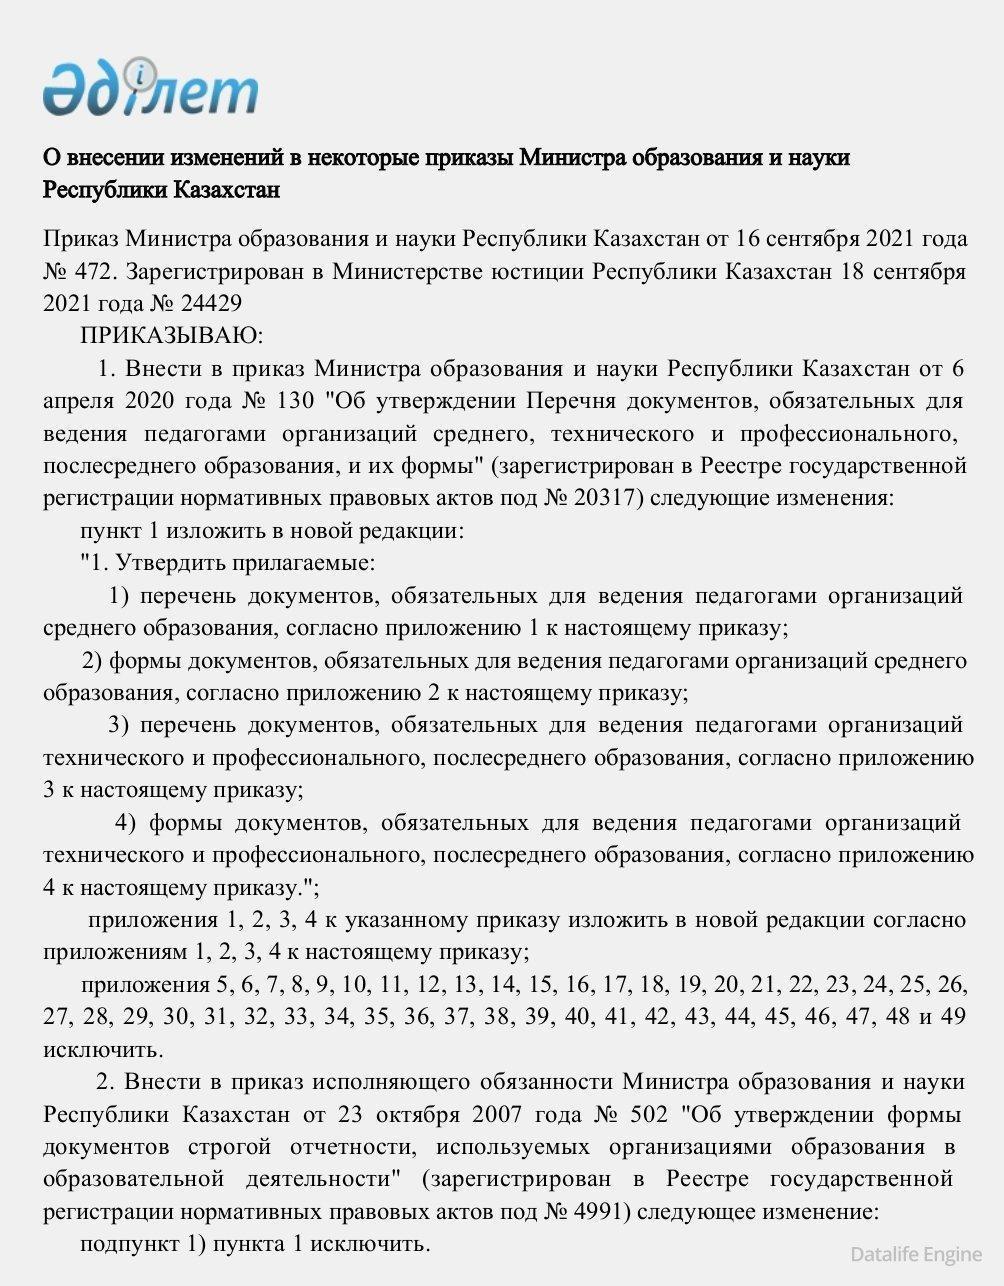 Приказ Министра образования и науки Республики Казахстан от 16 сентября 2021 года № 472.